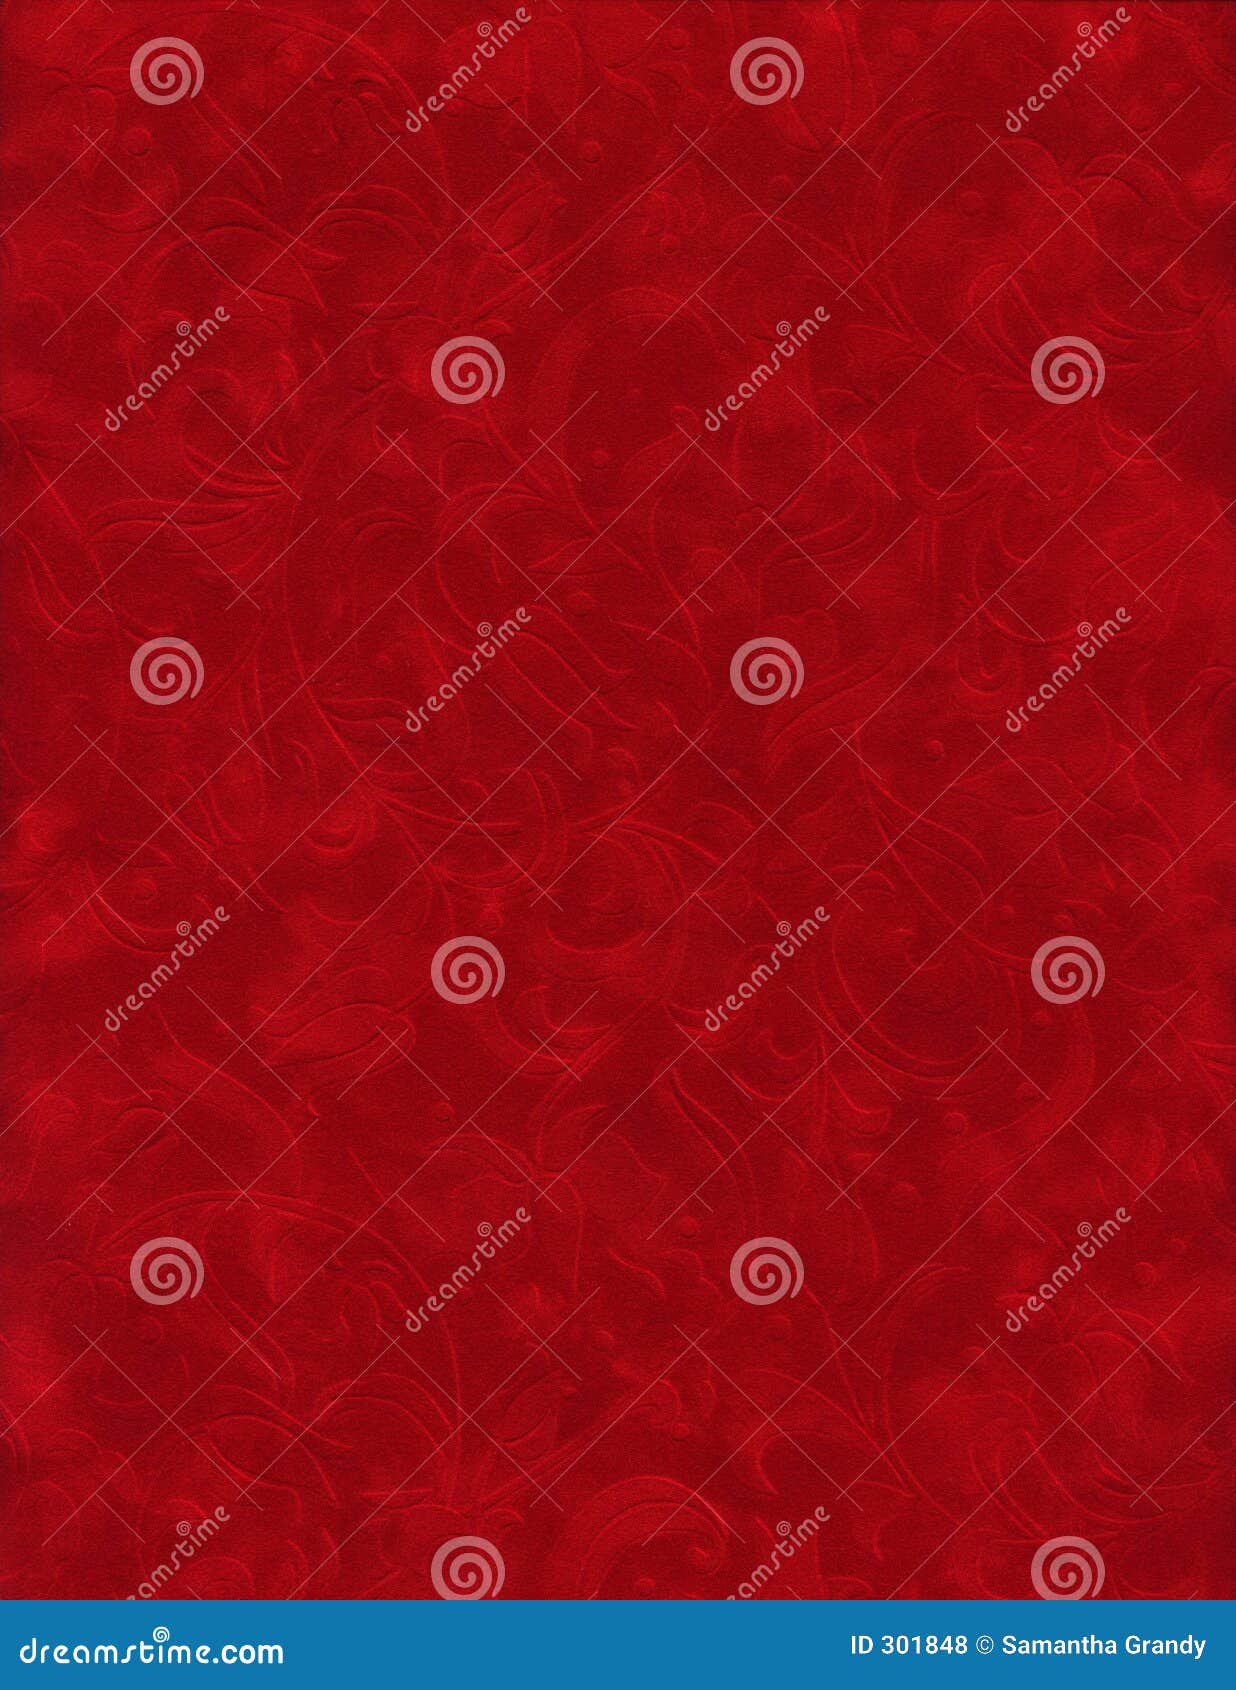 texture series - red velvet